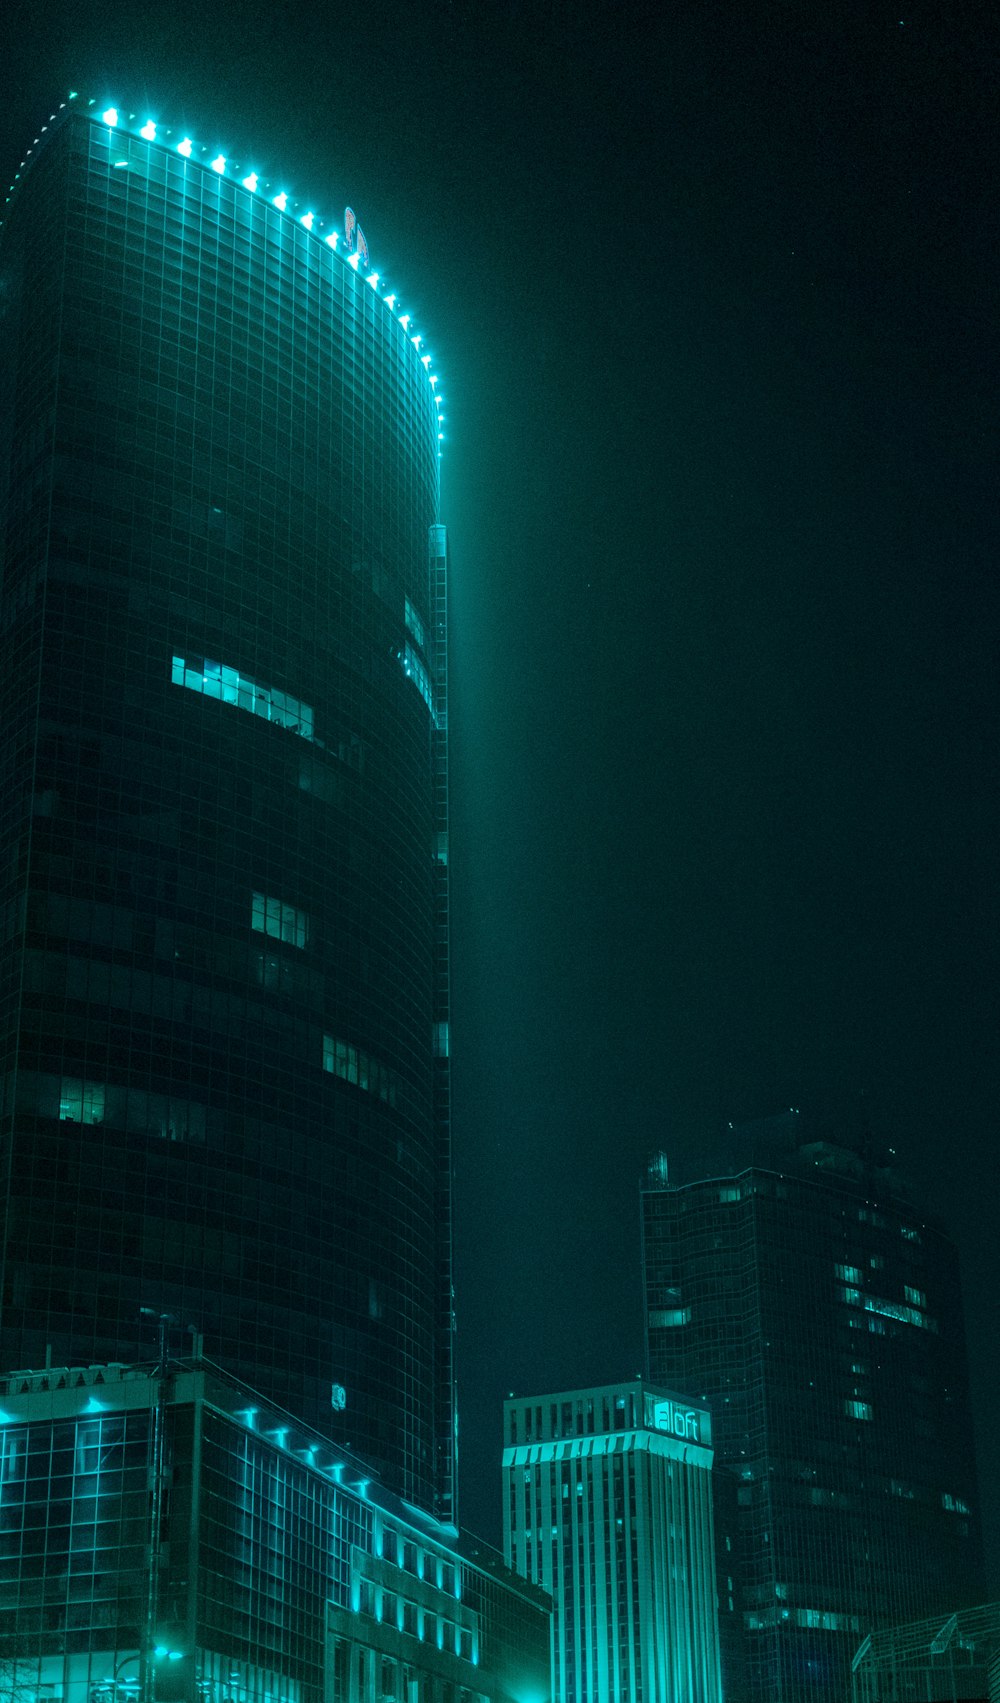 edifício alto preto e azul durante a noite